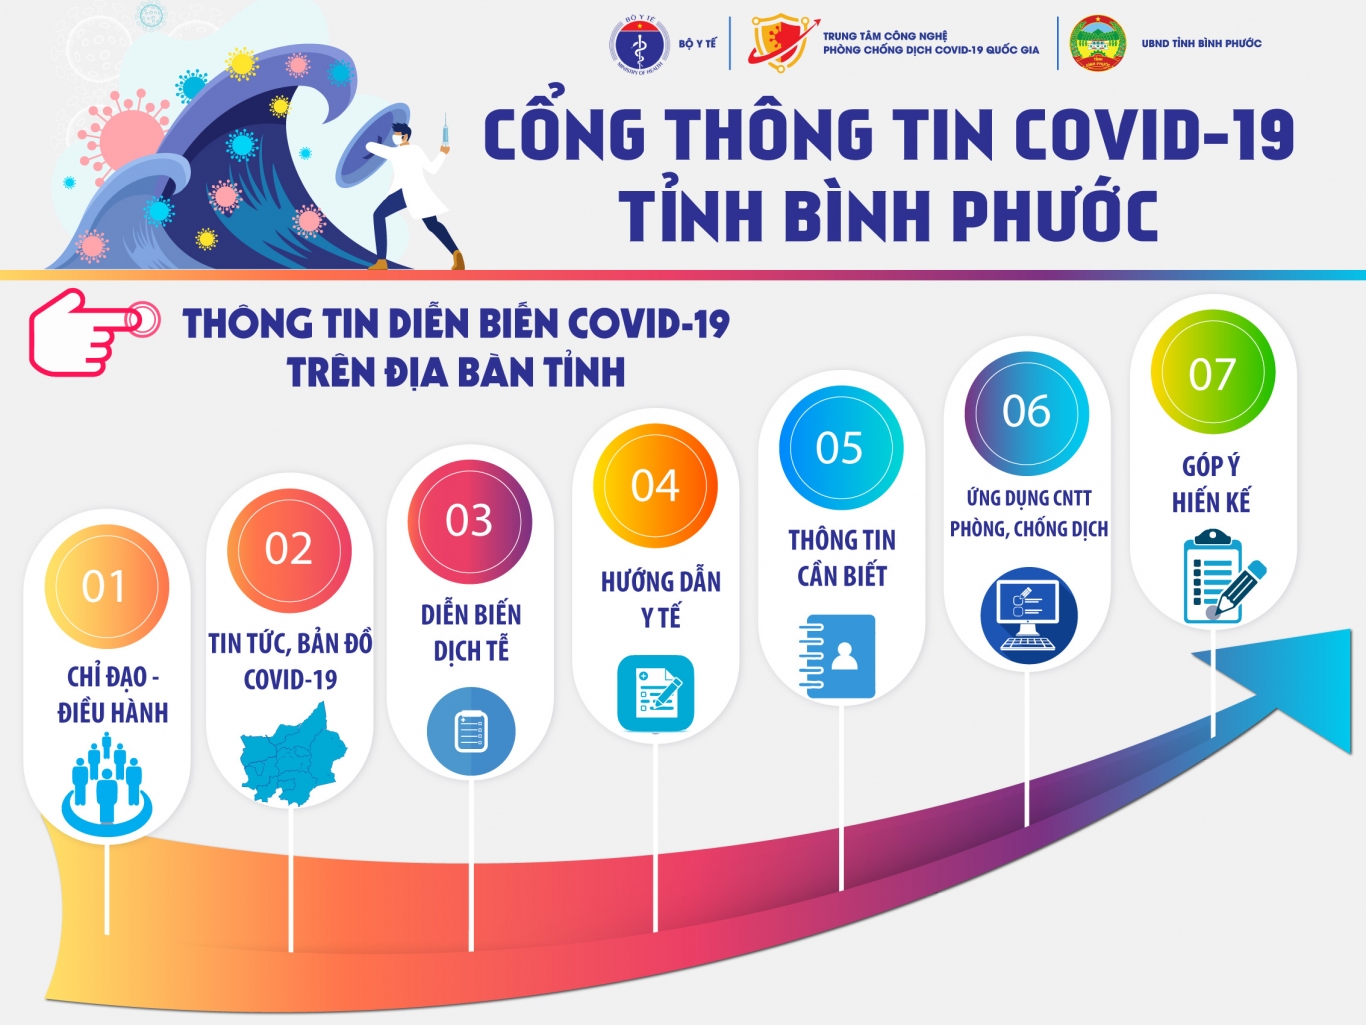 Cong thong tin Covid 19 LED (1)